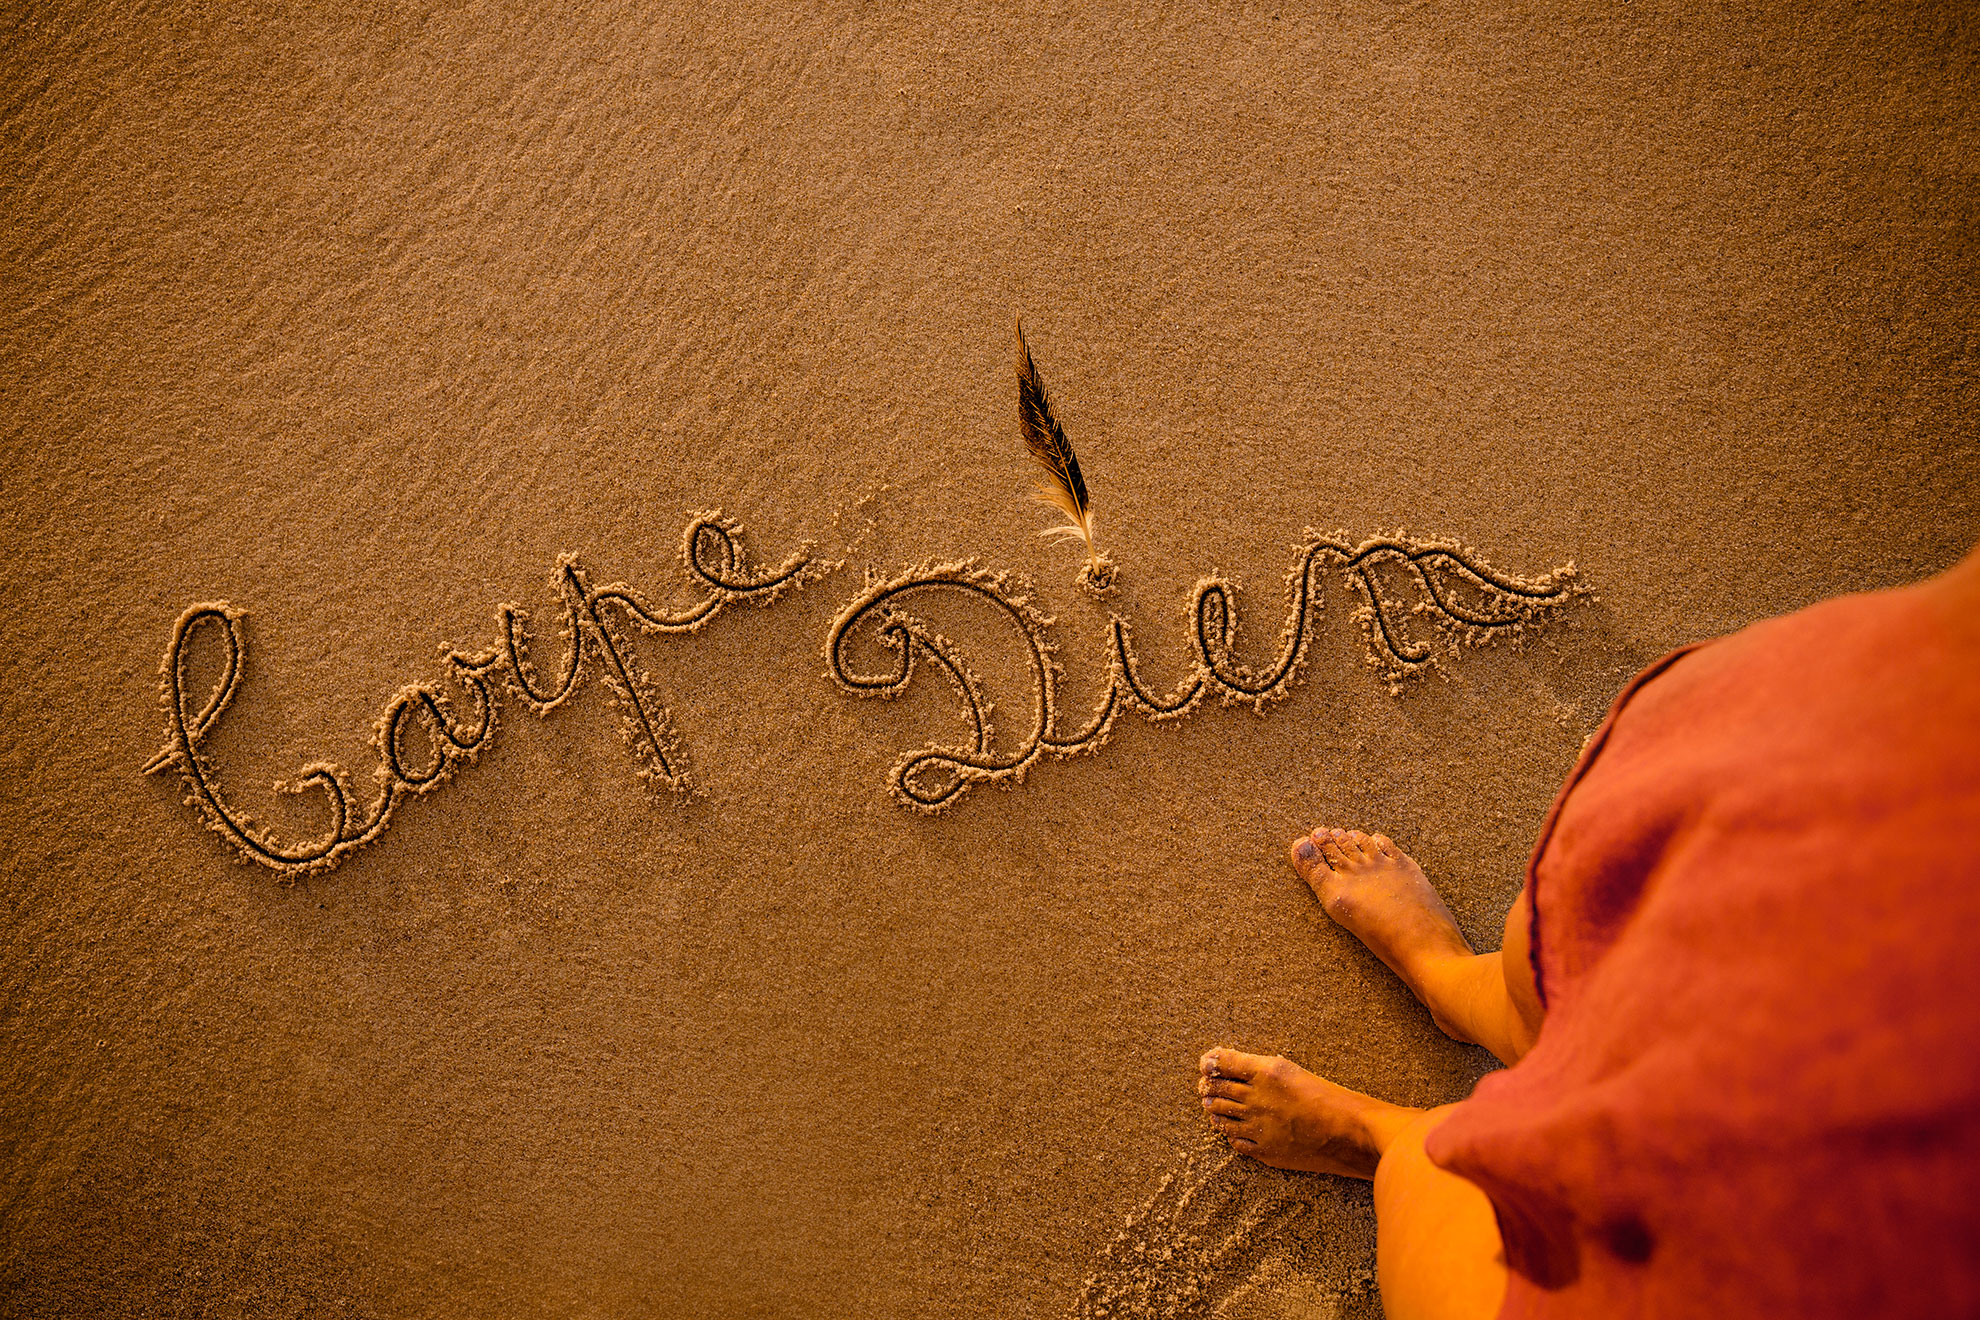 Carpe diem napisane na piasku, ilustracja do artykułu